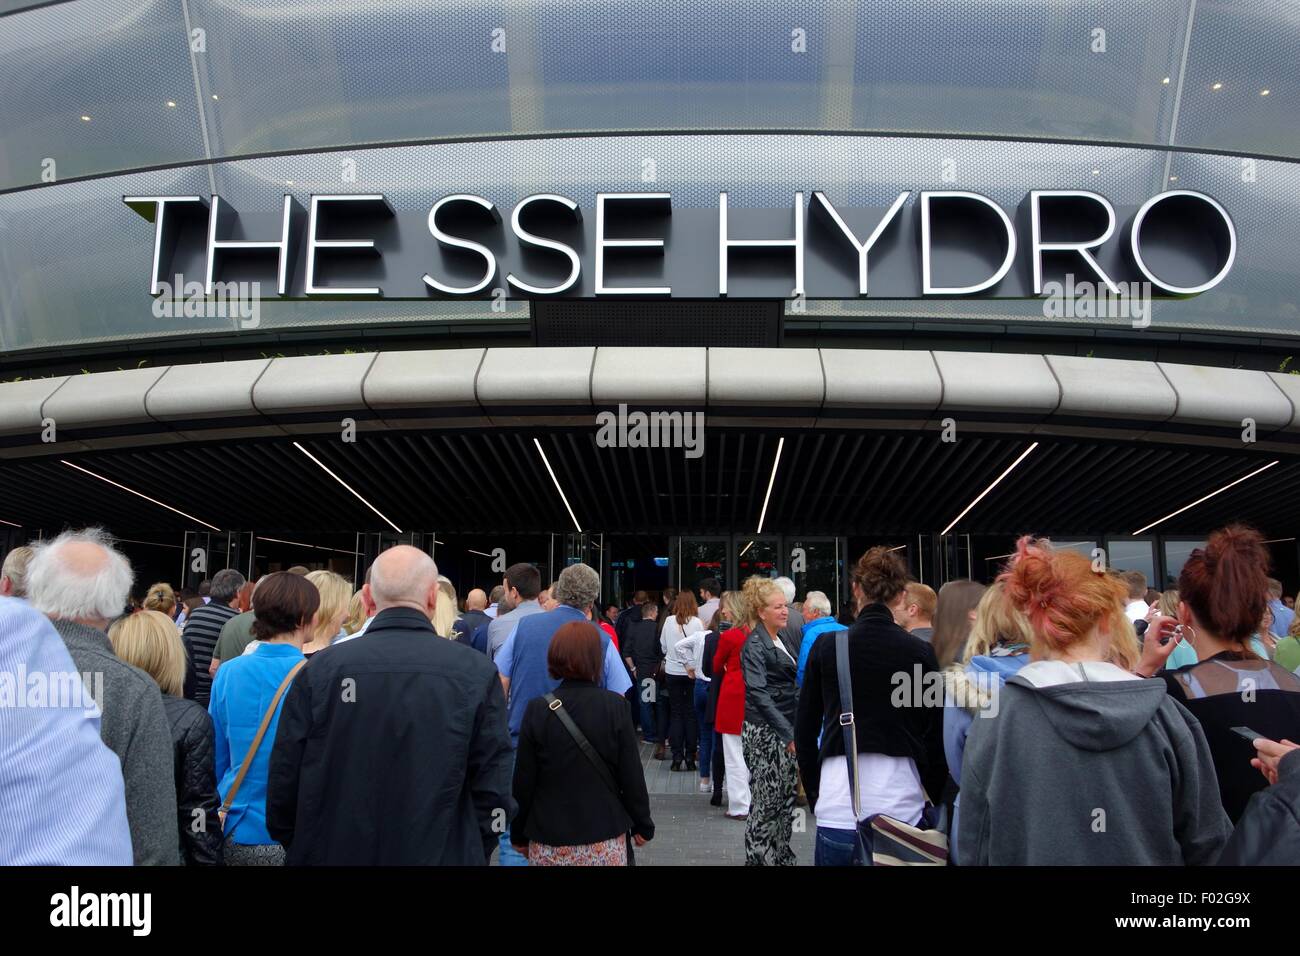 Les clients faisant la queue pour entrer dans l'entrée principale de l'Hydro de l'ESS pour un concert à Glasgow, Ecosse, Europe Banque D'Images